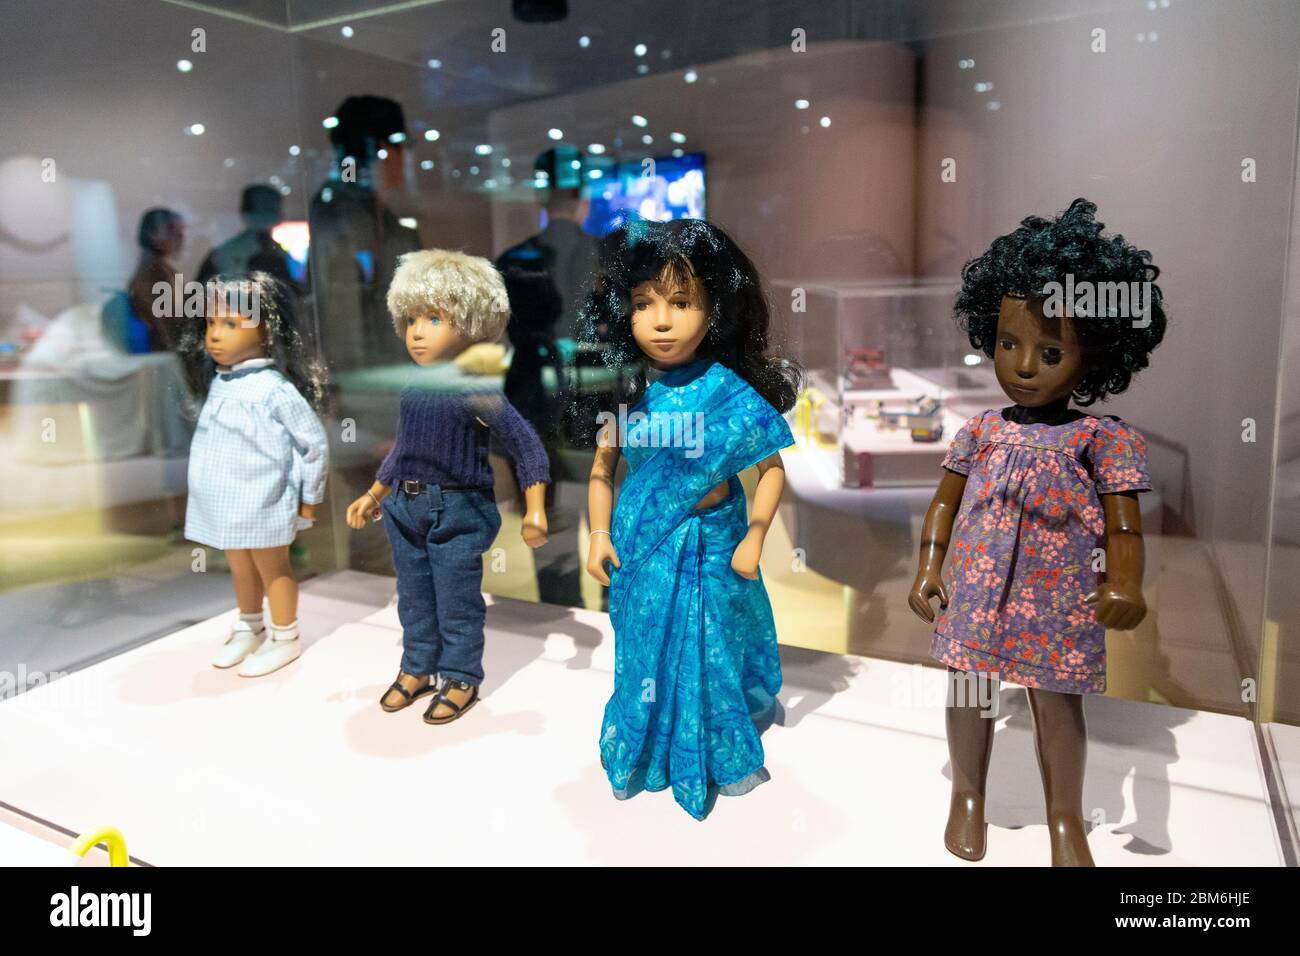 Sasha Puppen zeigen Vielfalt, verschiedene Kulturen und Ethnien auf der Ausstellung "Play Well" in der Wellcome Collection, London, Großbritannien Stockfoto